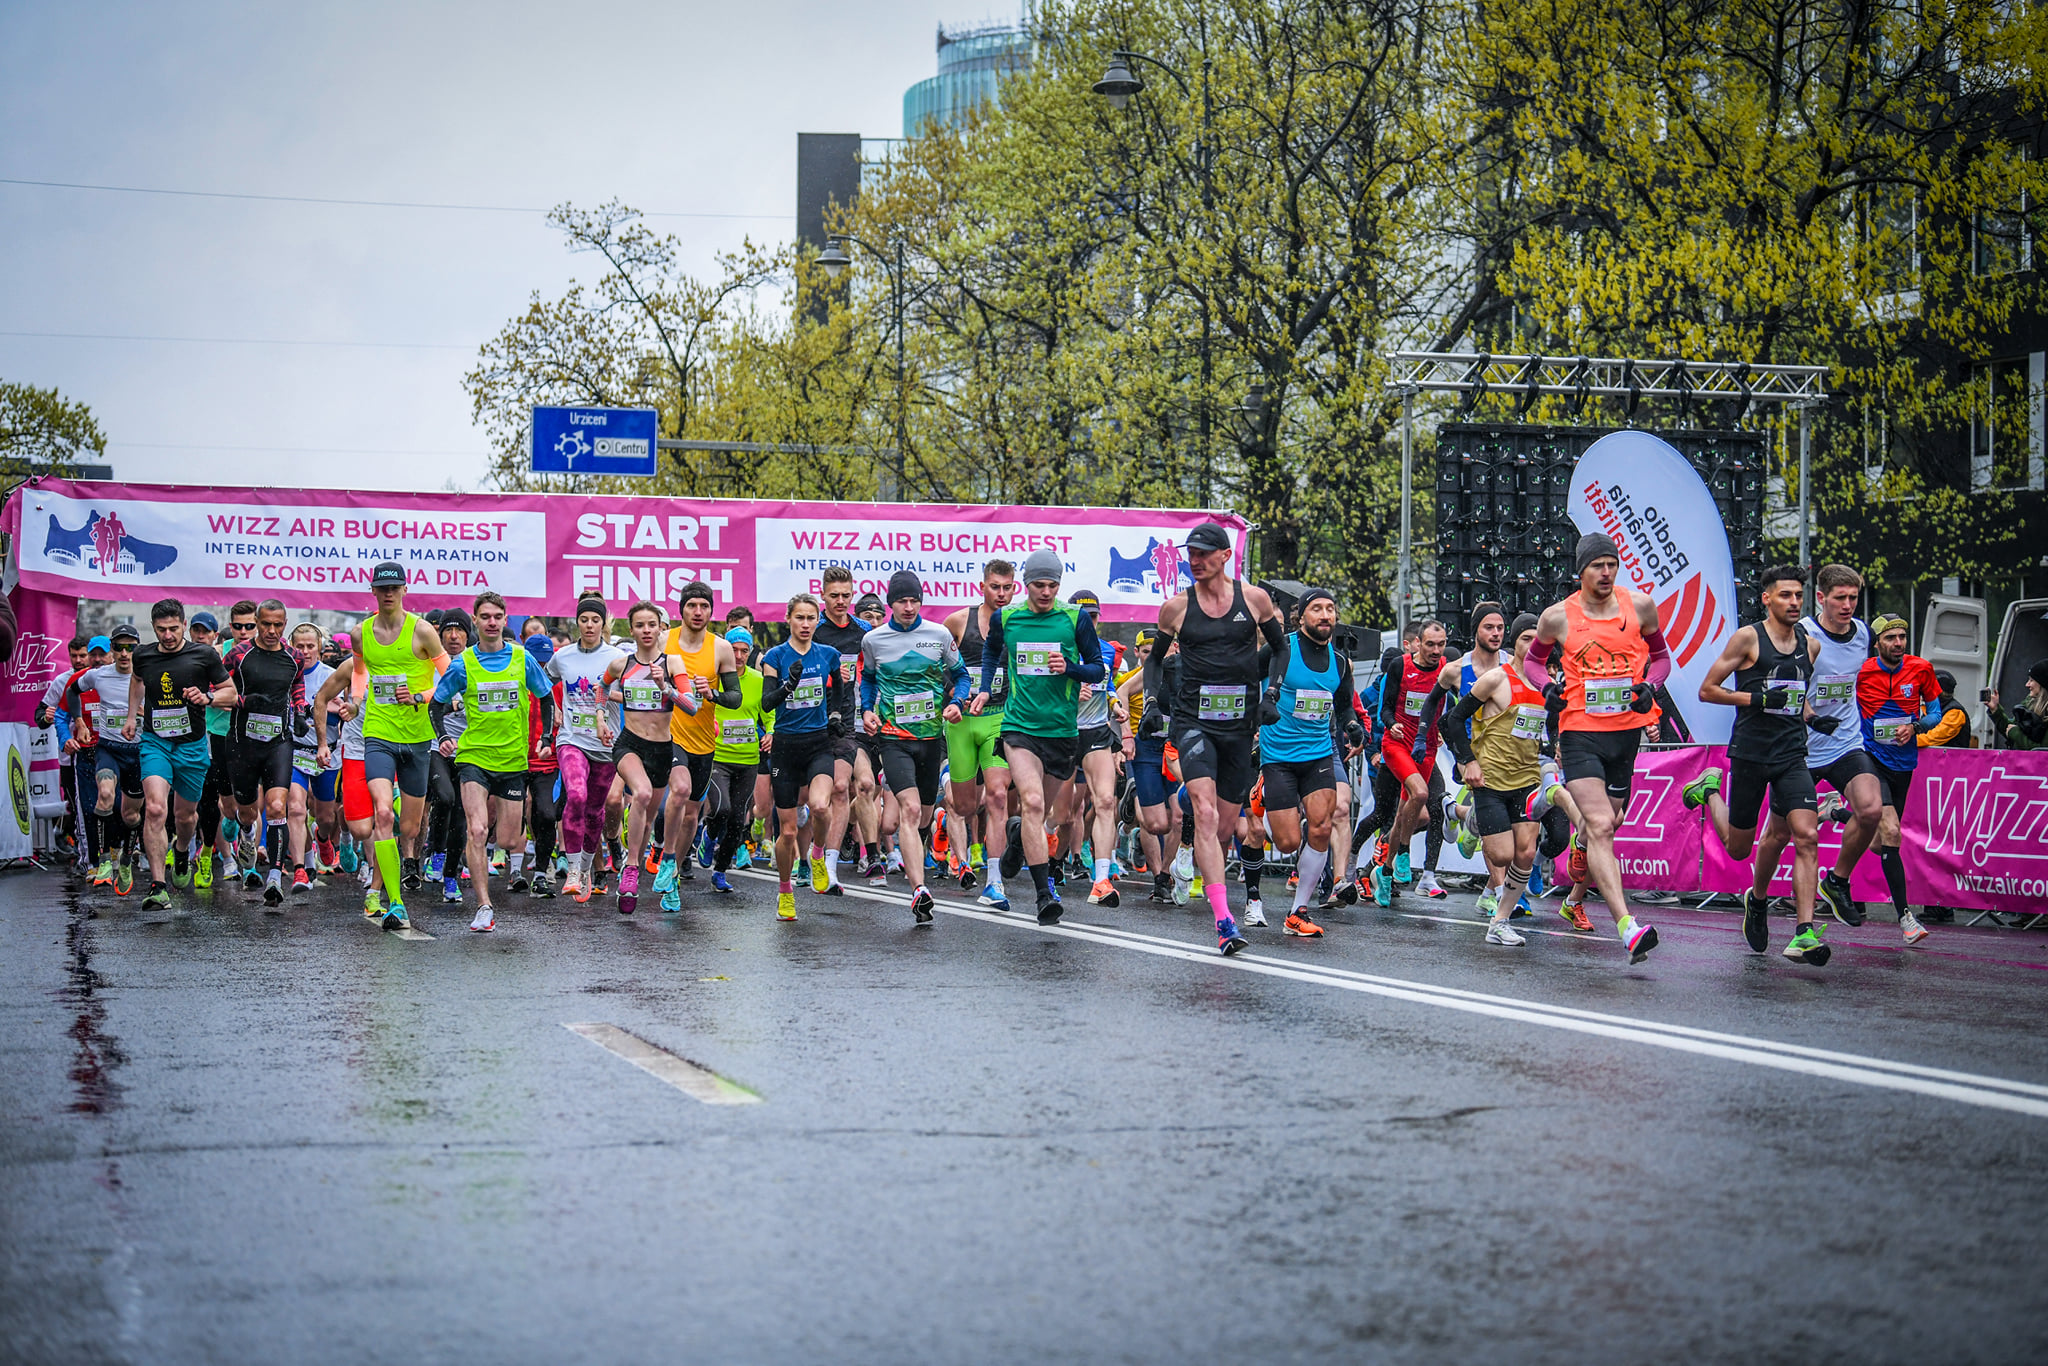 Weekend Report: Wizz Air Bucharest International Half Marathon